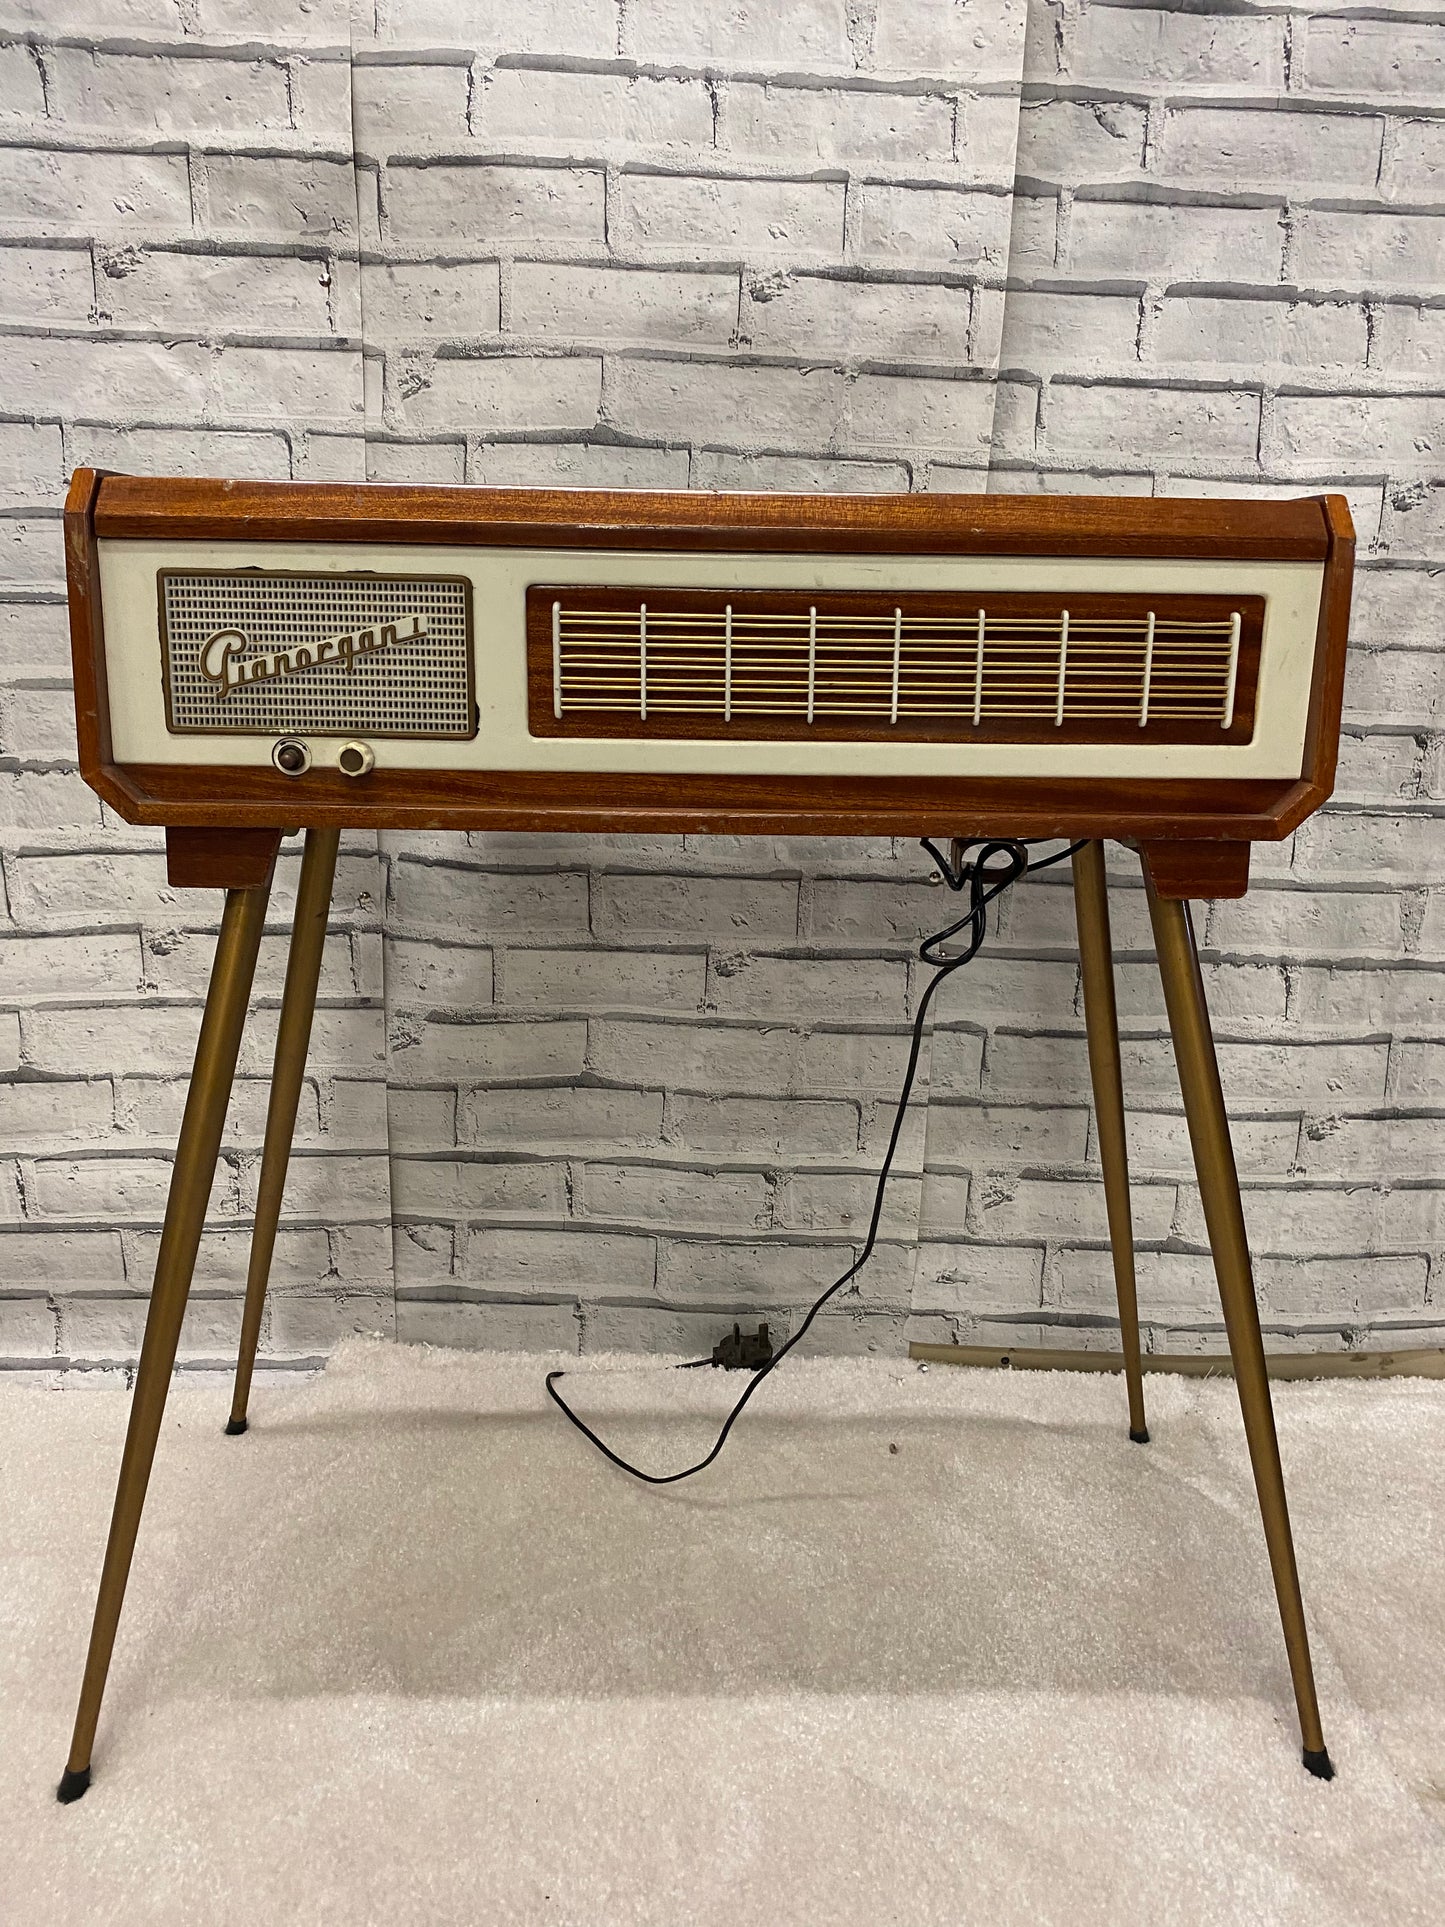 Vintage 1950’s Electric  Pianorgan Farfisa